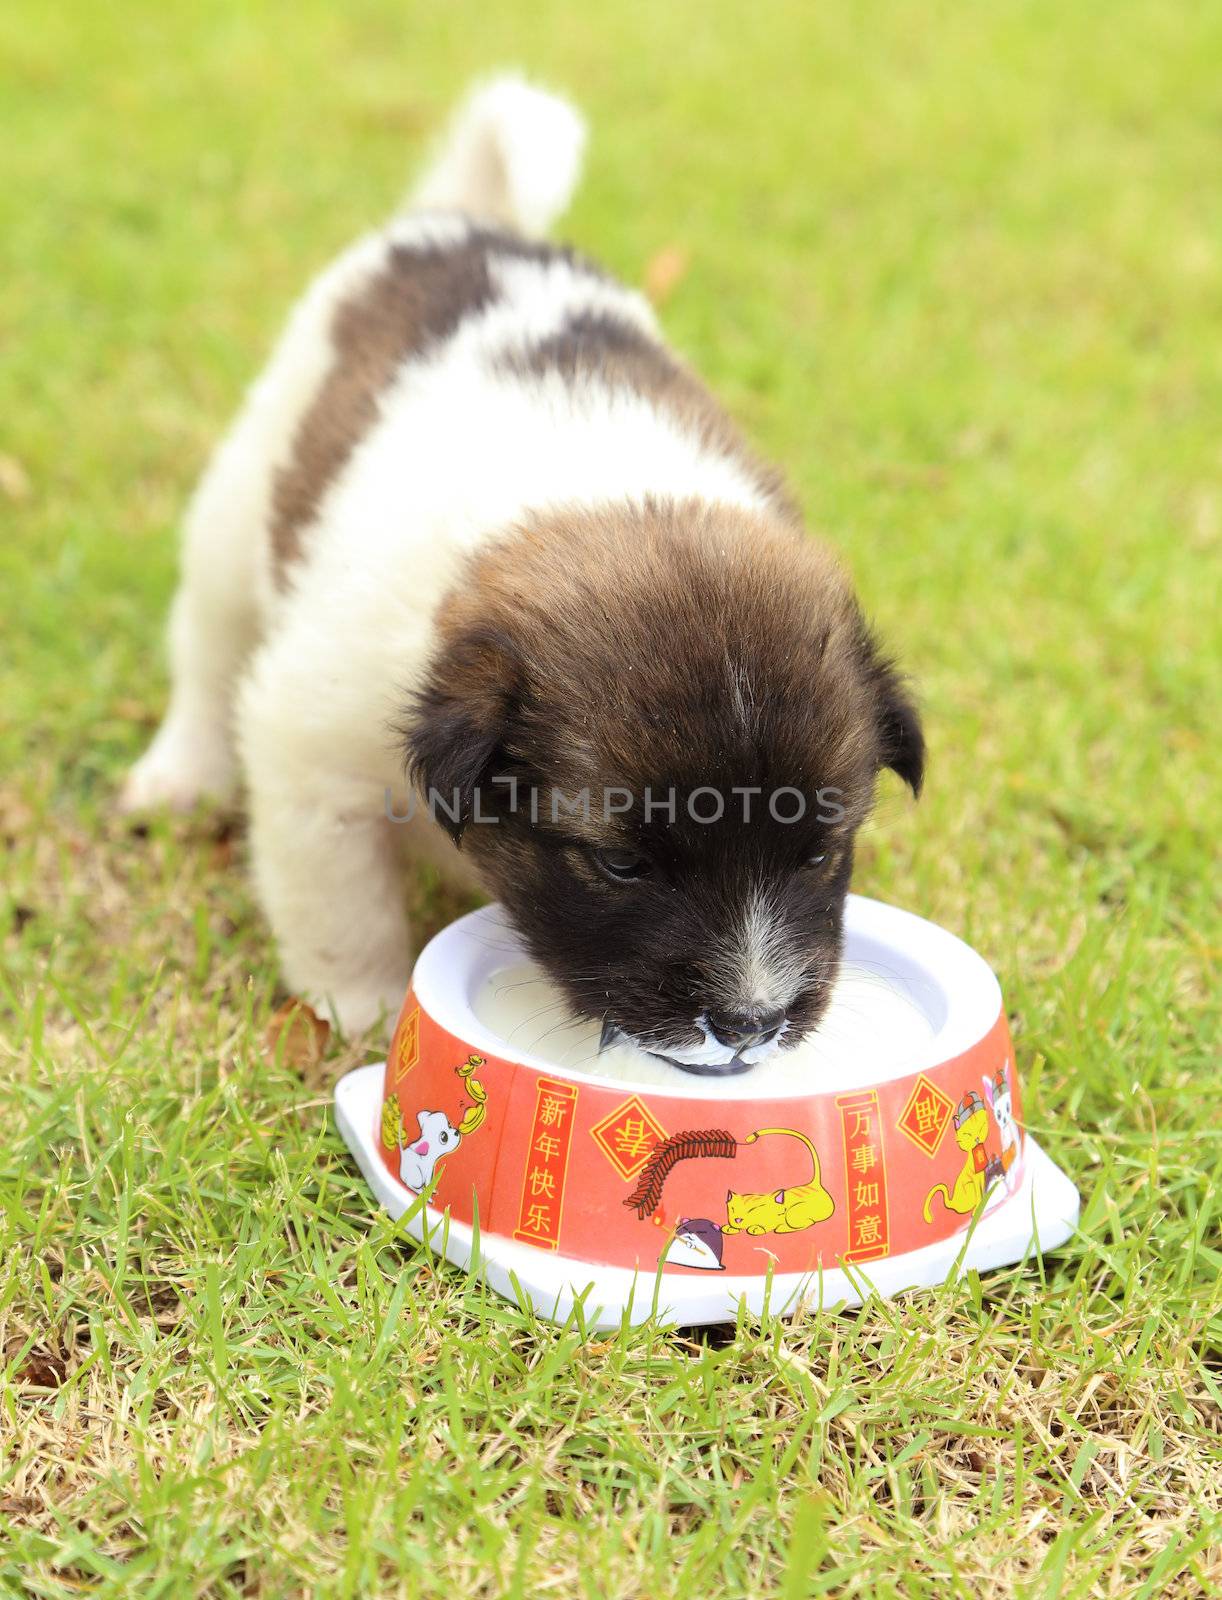 puppy on the grass drinking milk by geargodz